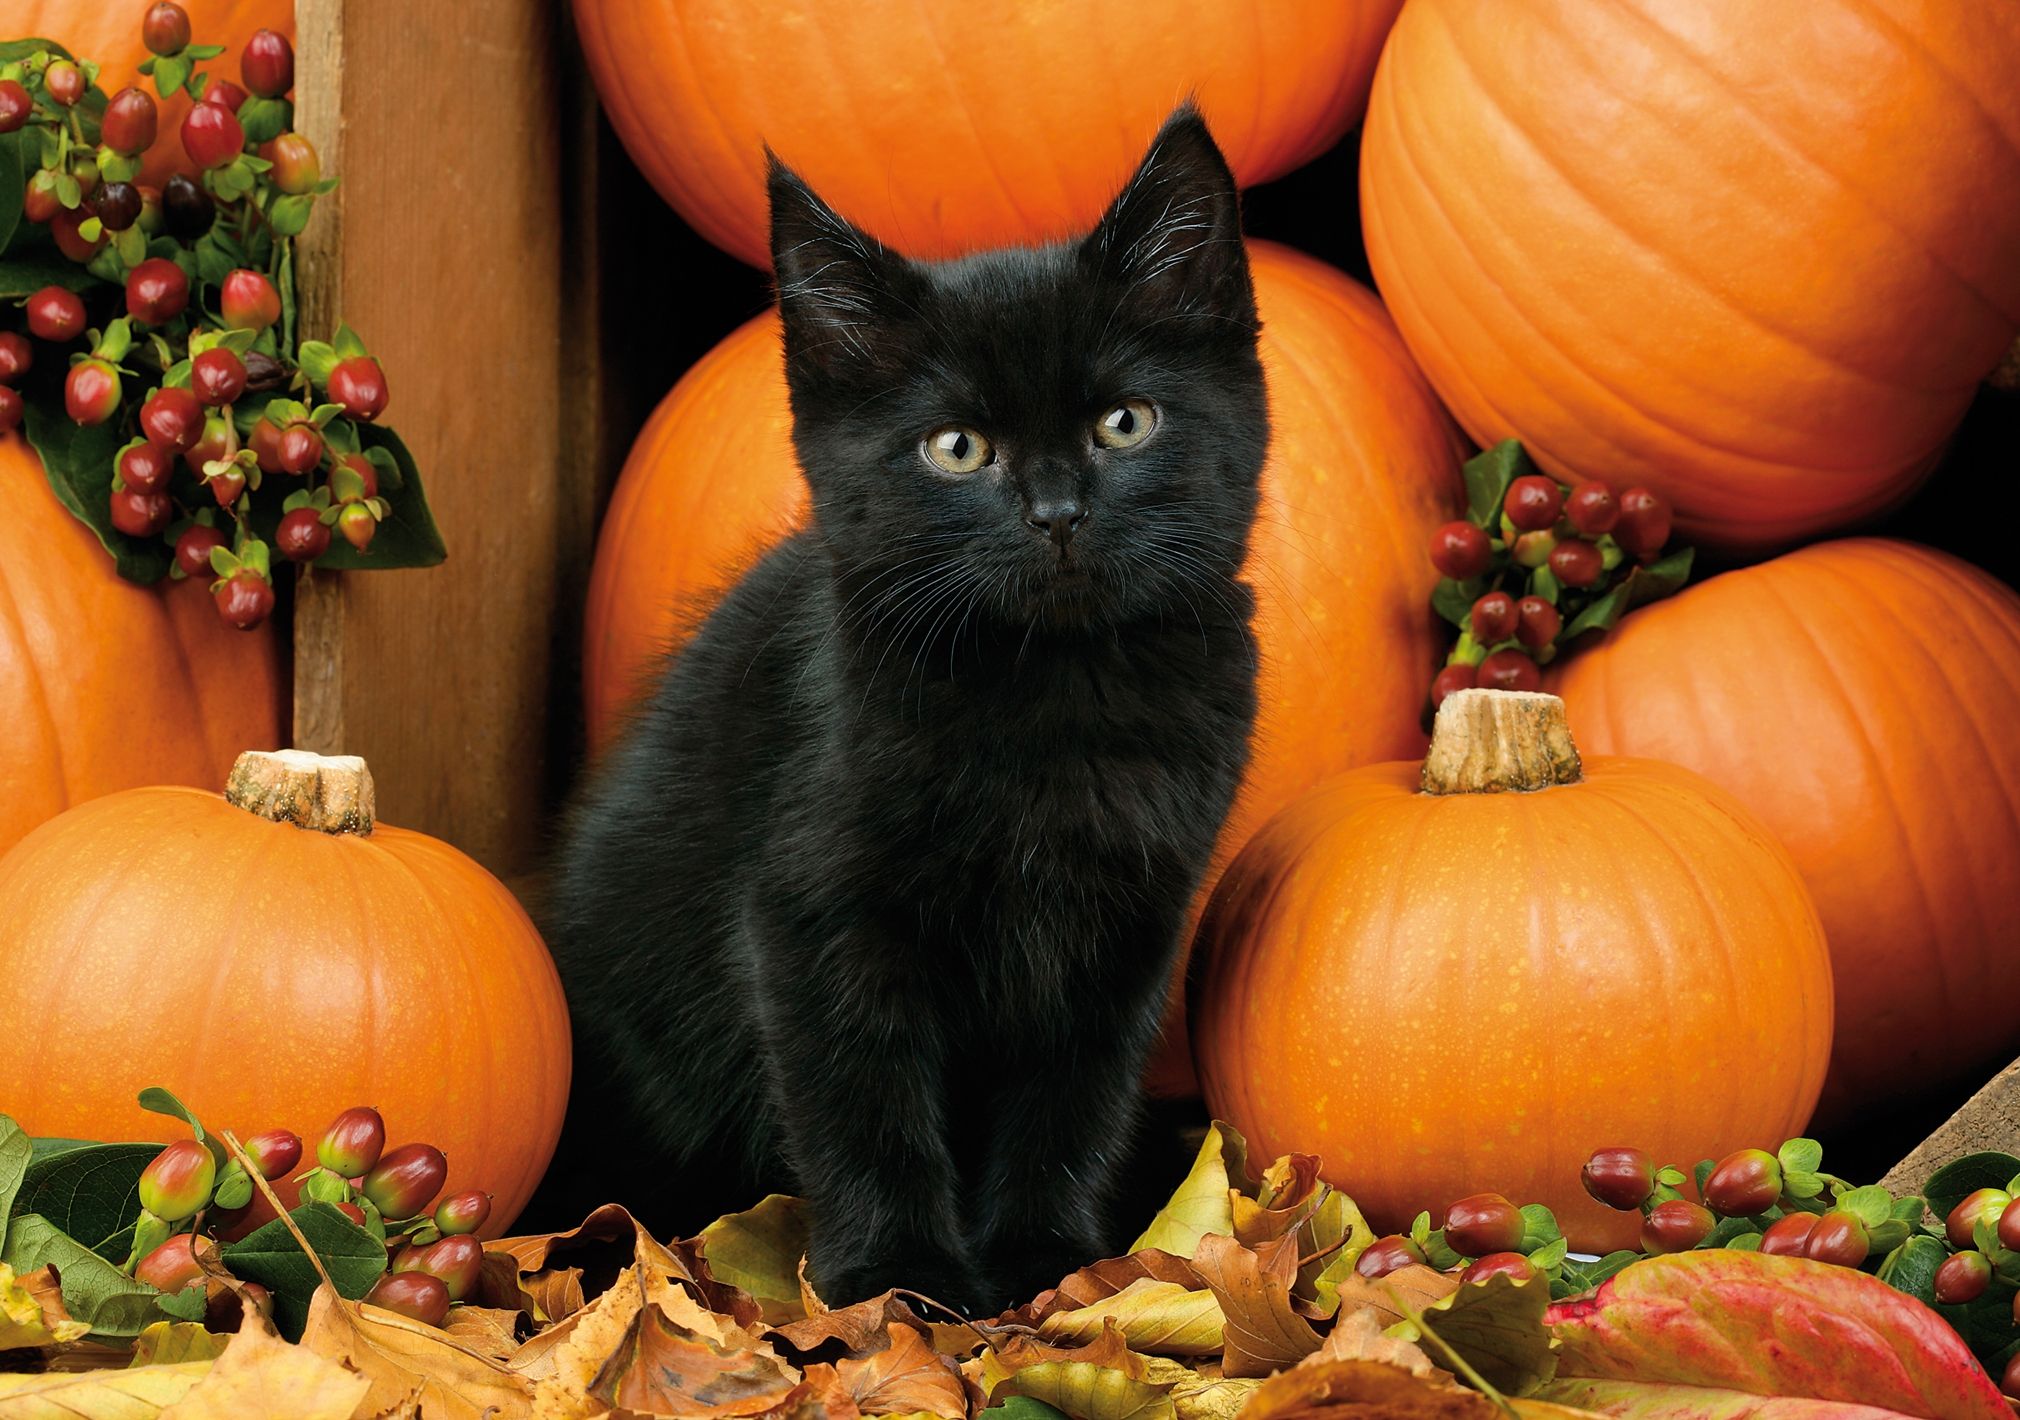 Black Cats And Pumpkins Desktop Wallpaper At